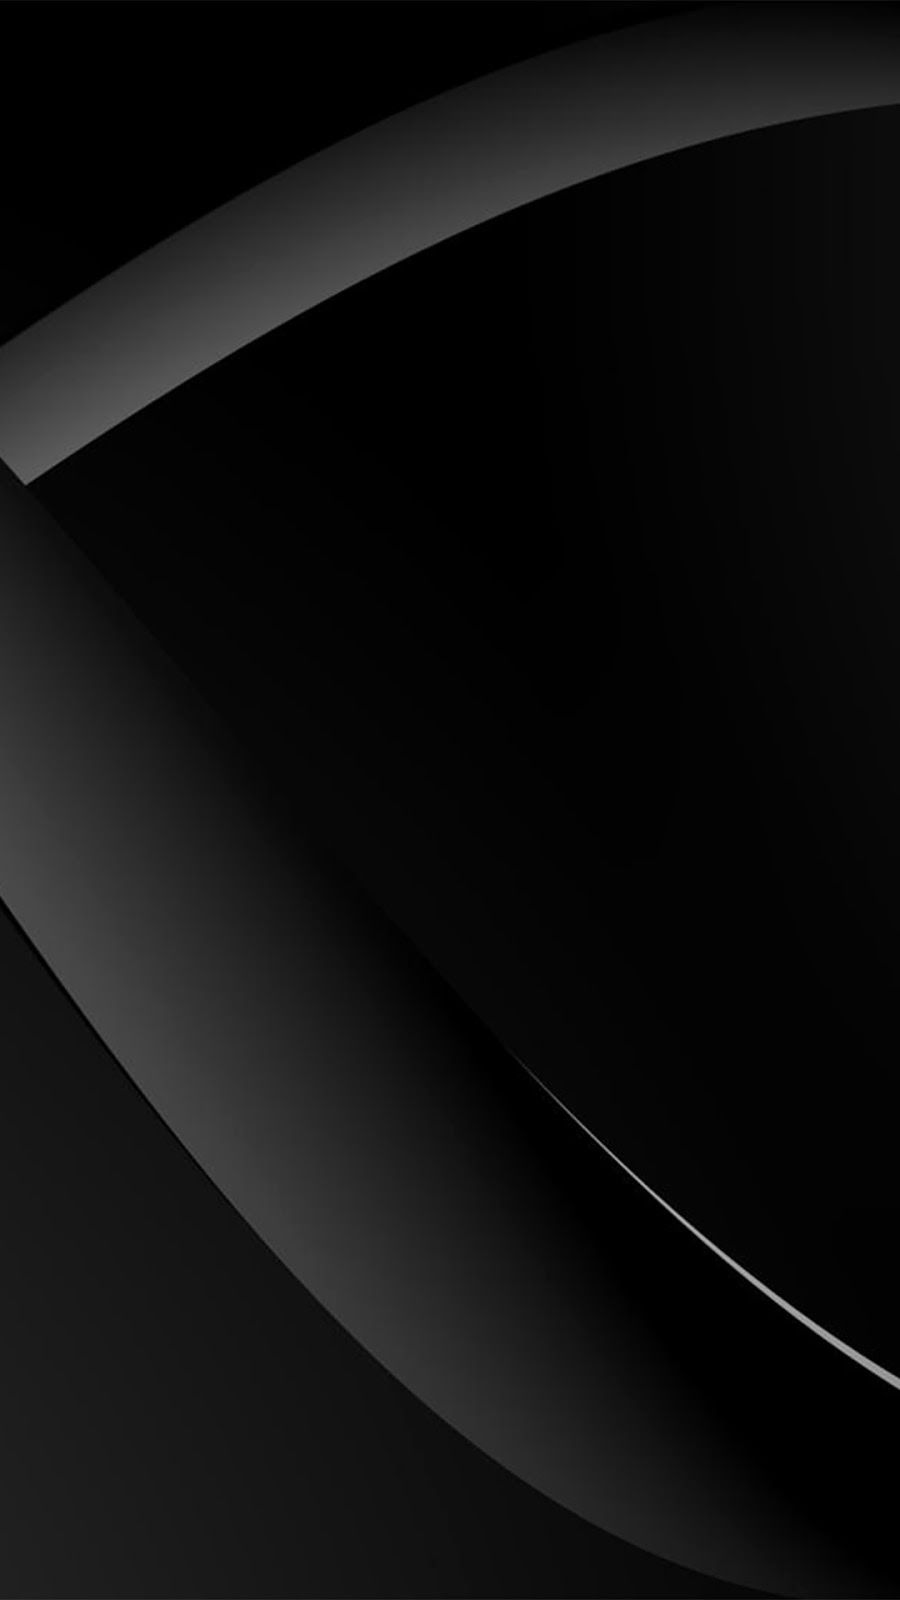 Free download blackberry themes nokia lumia 1520 wallpaper black